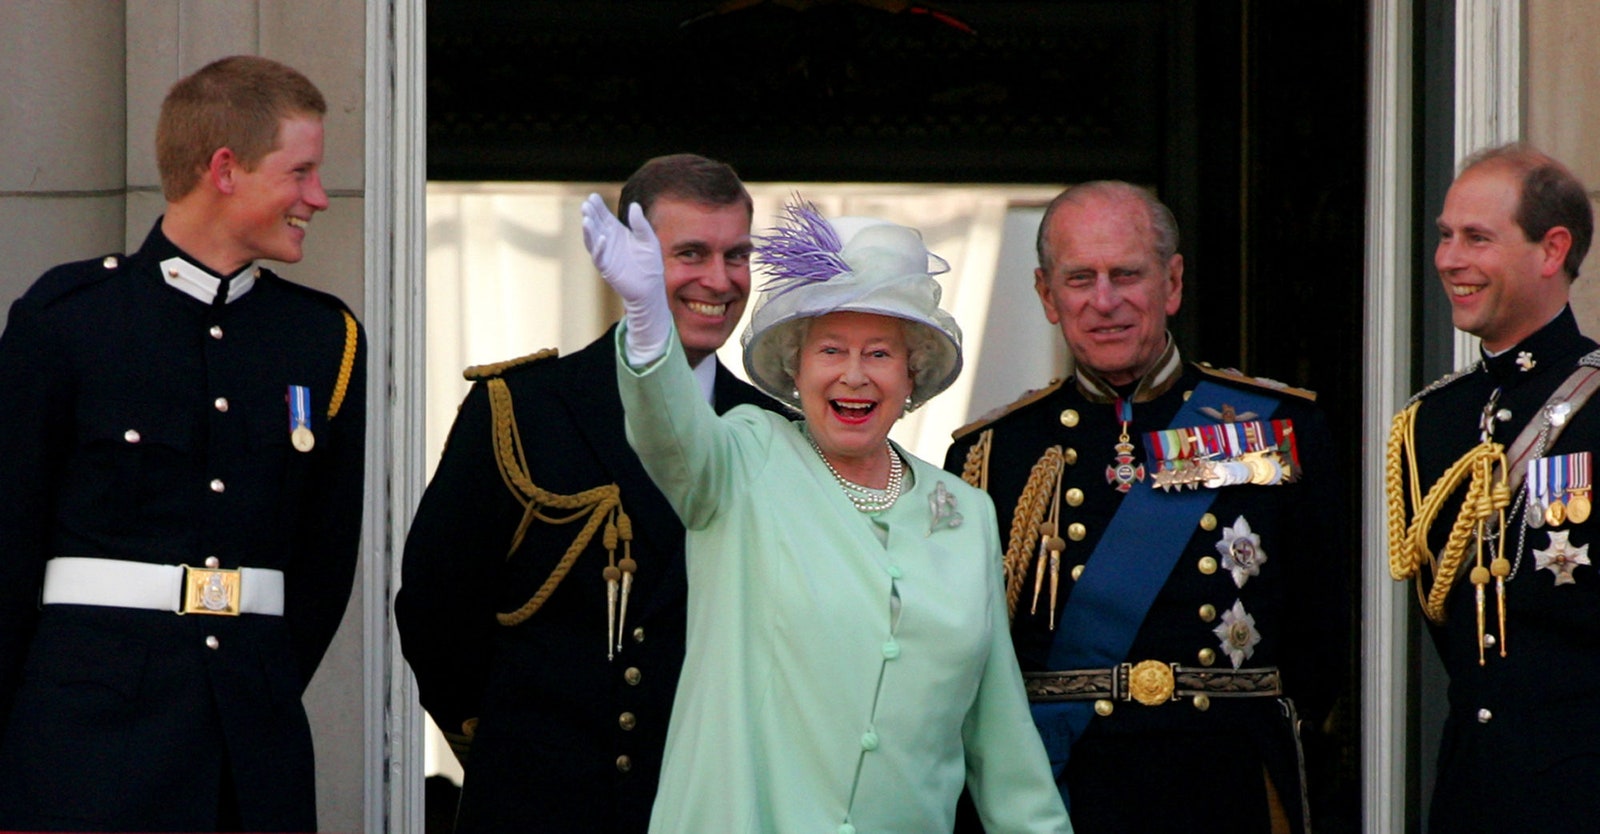 Традиционный парад Trooping the Colour в честь дня рождения Елизаветы II все же состоится